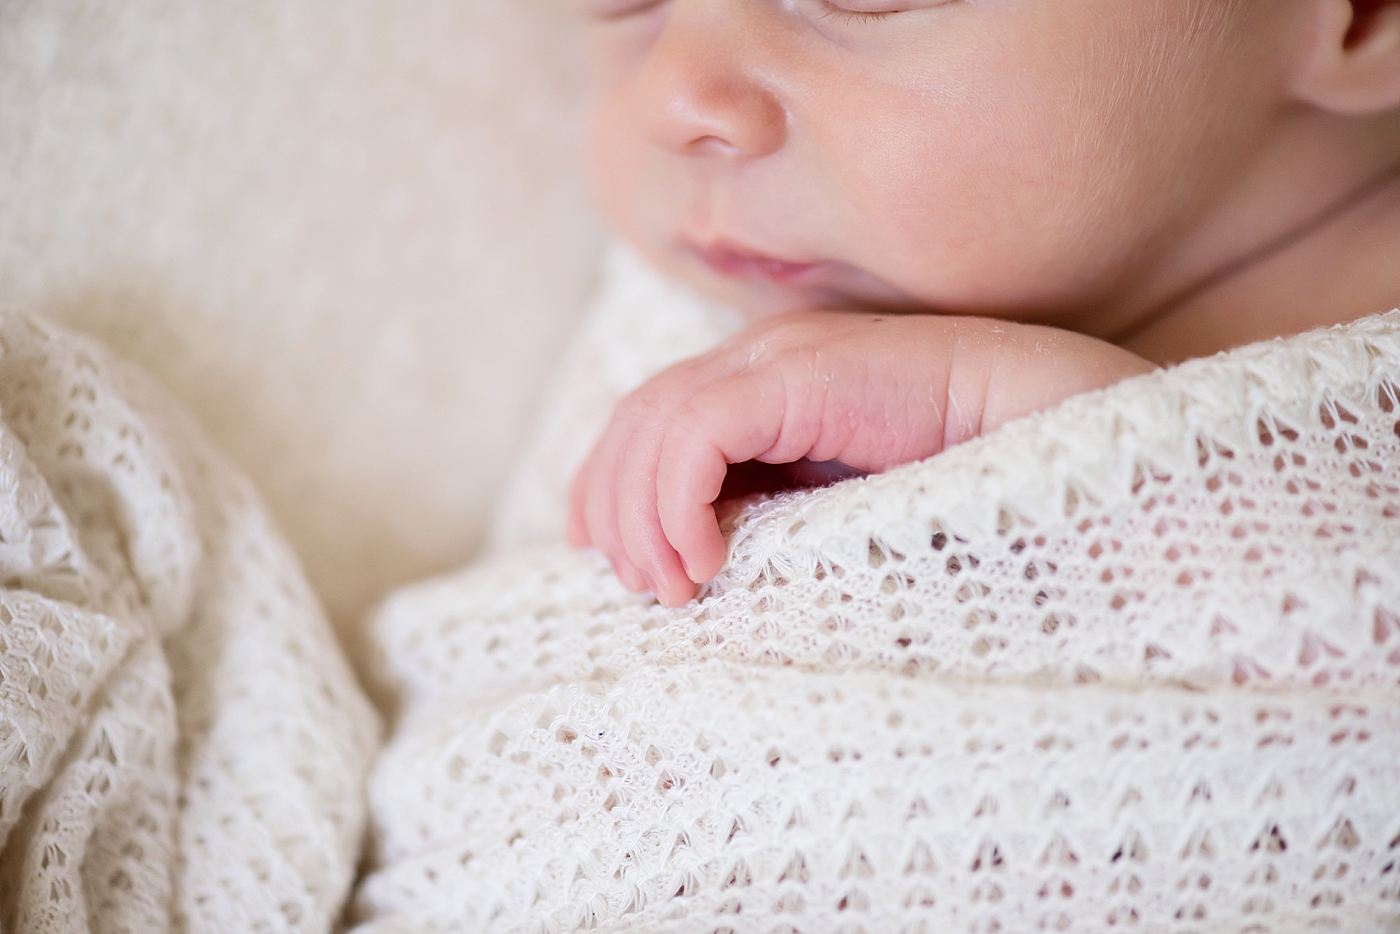 Detail of newborn baby's hand | Photo by Charlotte NC Newborn Photographer Anna Wisjo